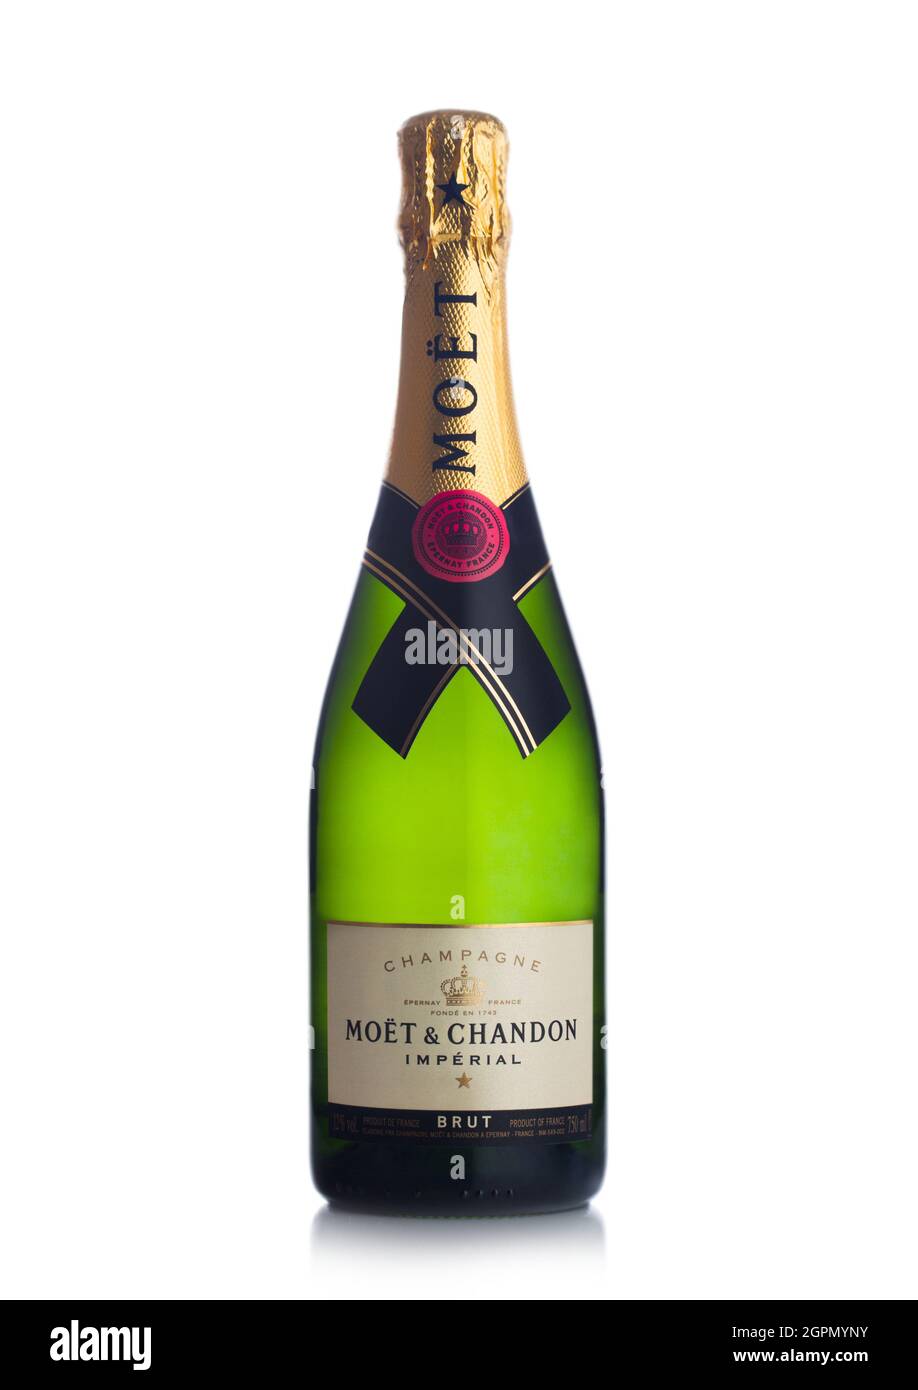 LONDRES, Royaume-Uni - 15 septembre 2021 : bouteille de champagne Moet & Chandon Imperial brut sur blanc. Banque D'Images